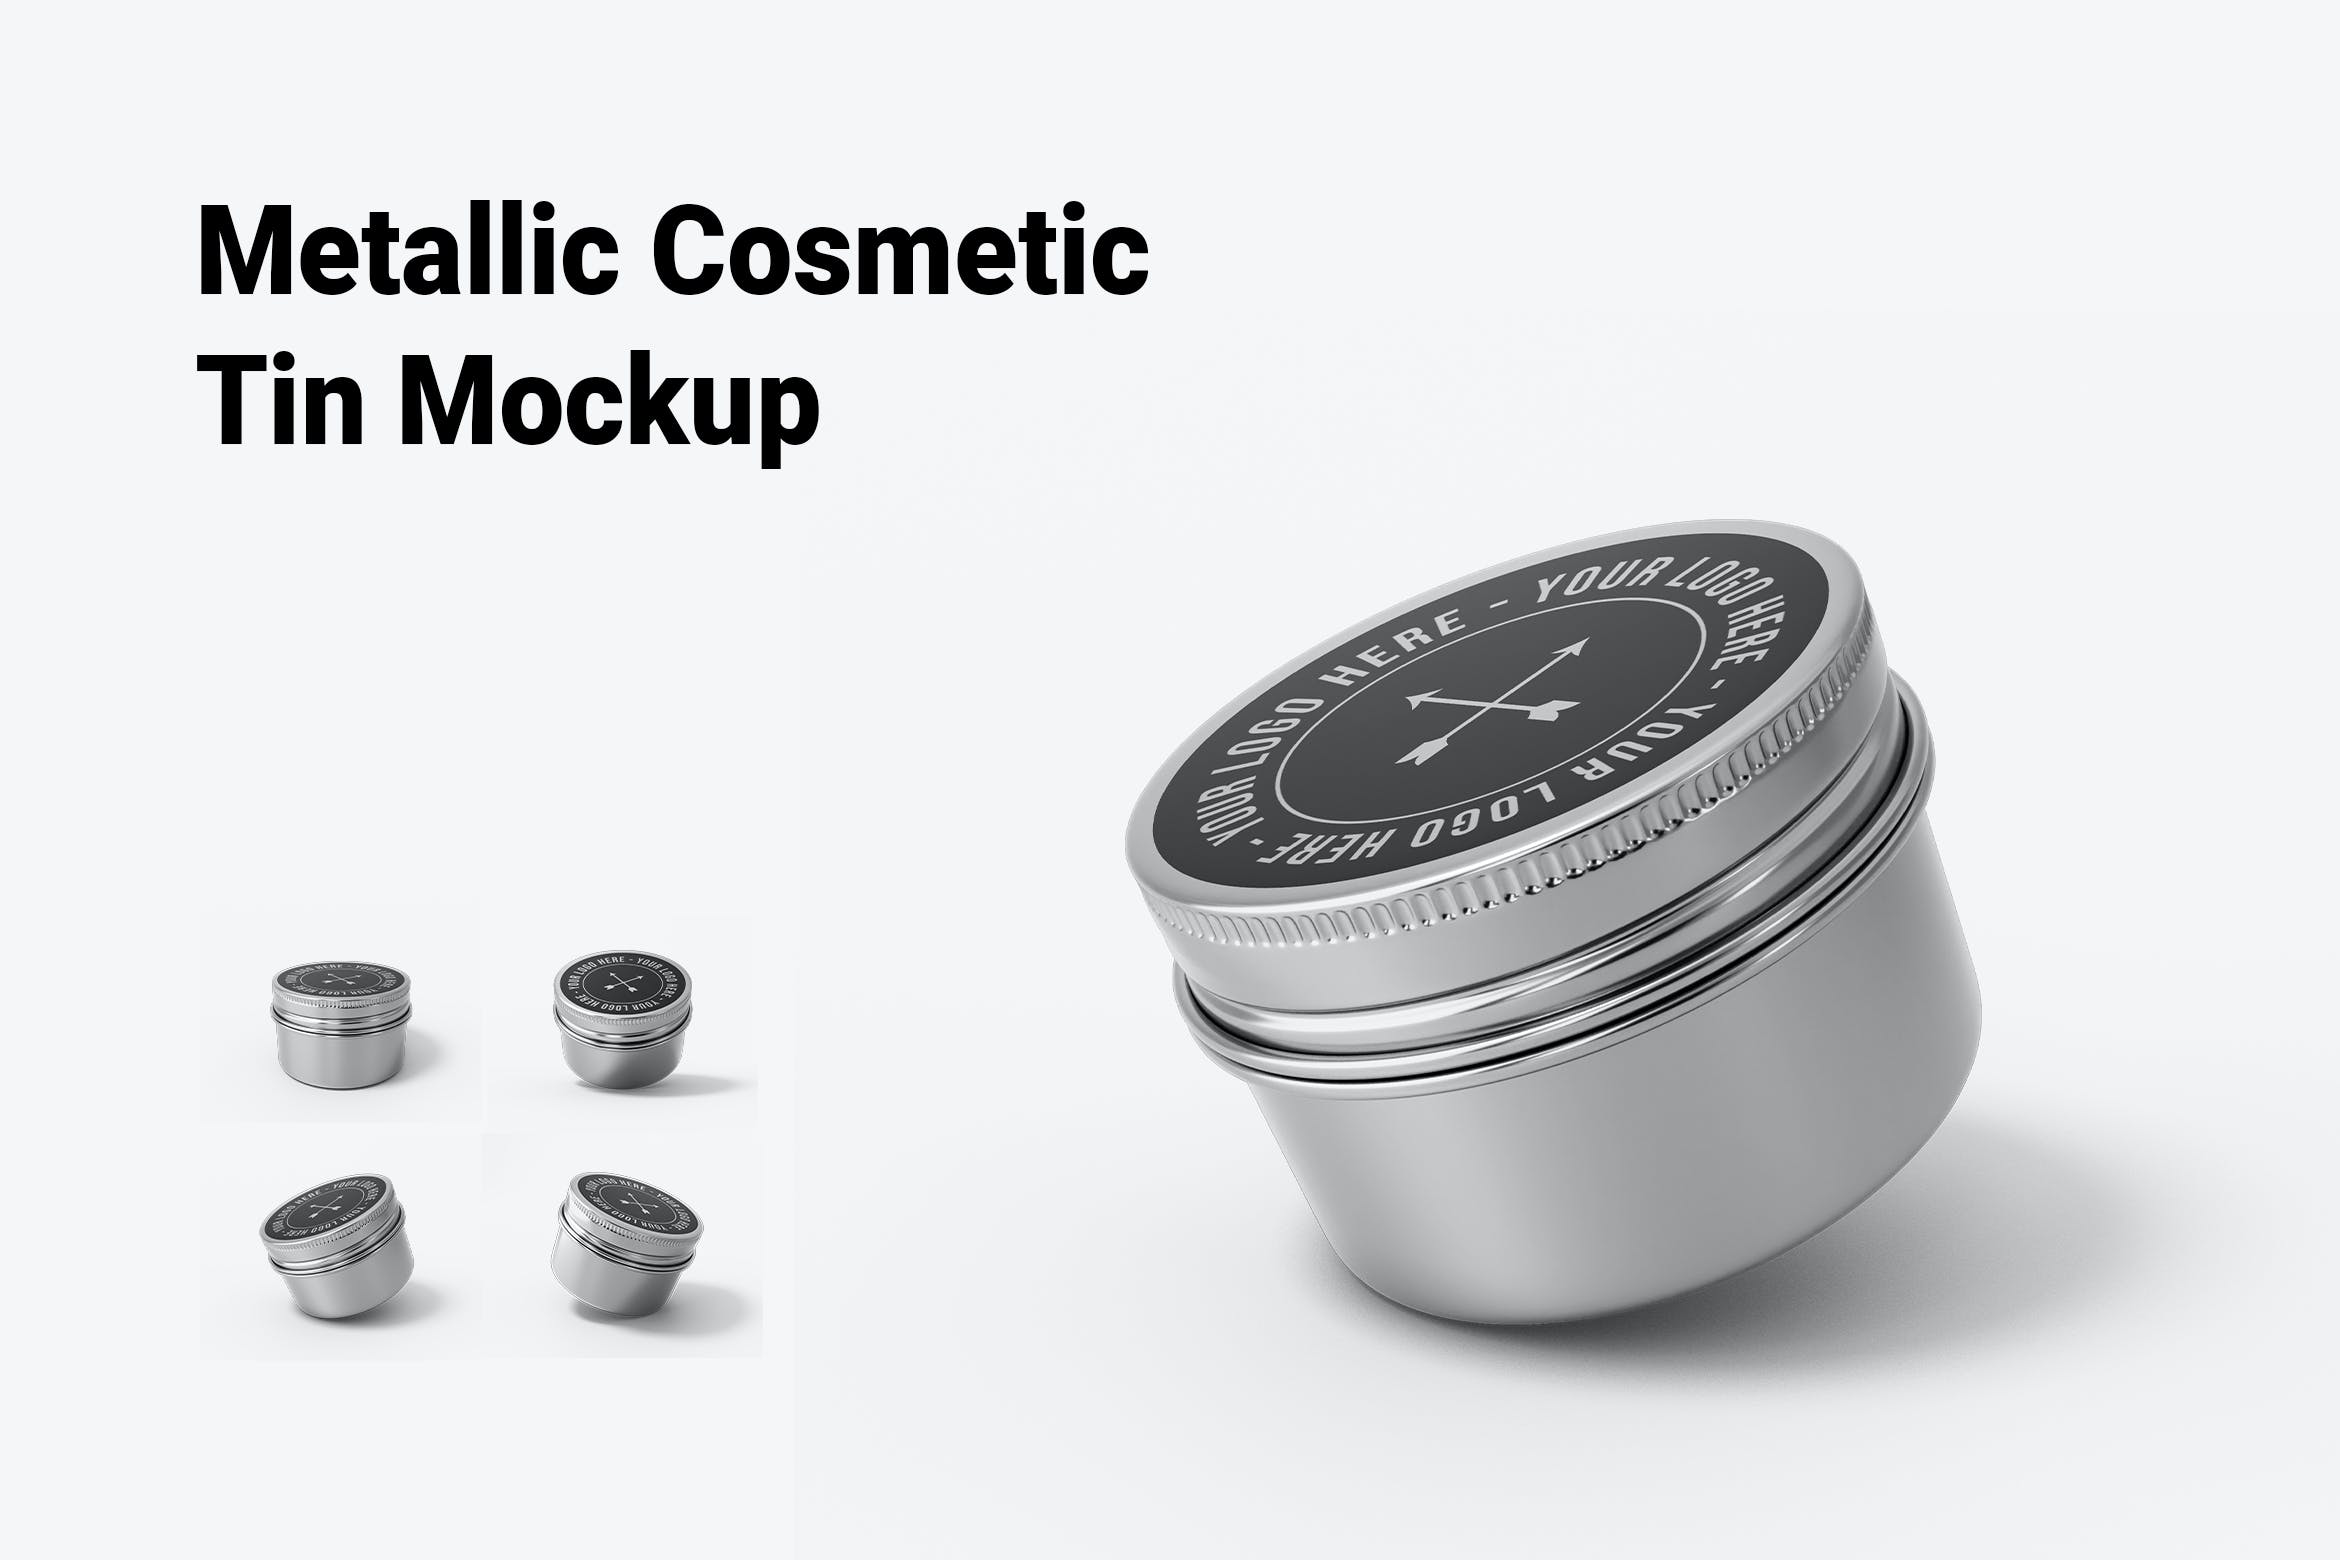 6259 化妆品金属锡瓶包装设计样机-Metallic Cosmetic Tin Mockup